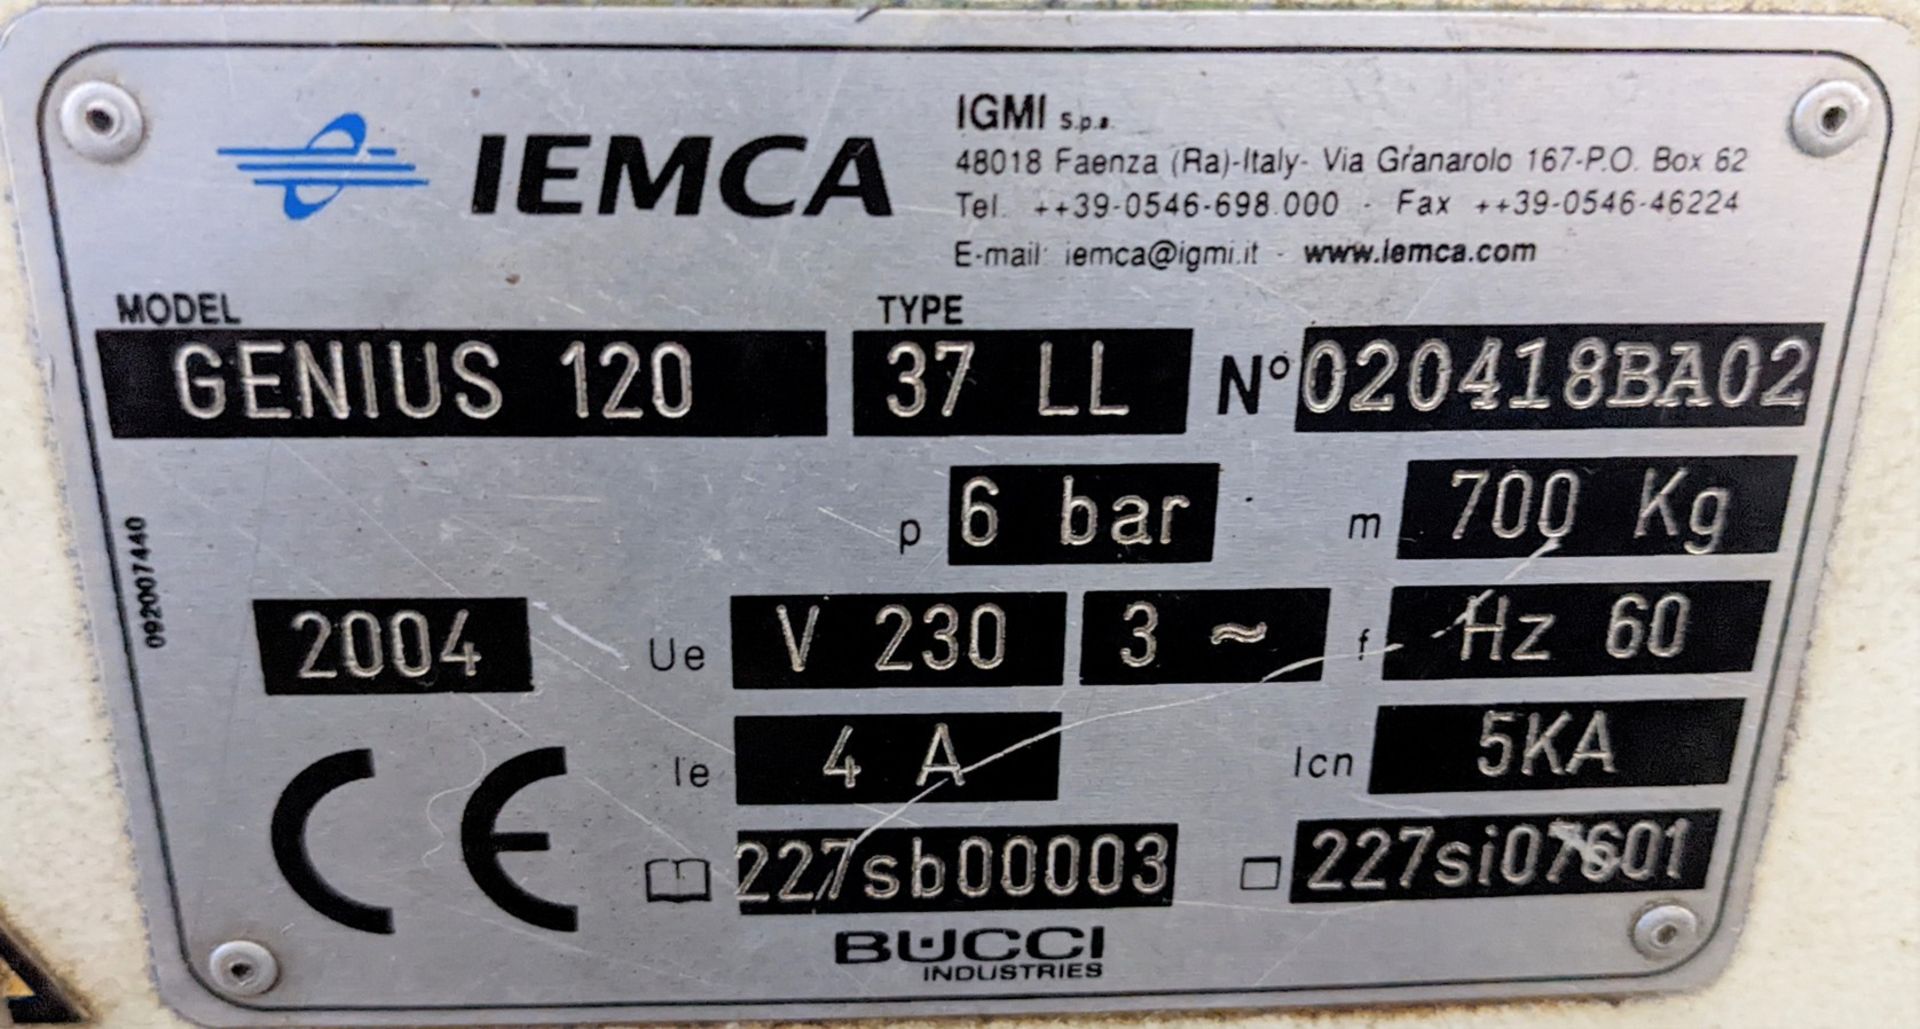 CITIZEN CINCOM M-20 CNC SWISS LATHE, CNC CONTROL, S/N V5039 W/ IEMCA GENIUS 120 BAR FEEDER - Image 18 of 30